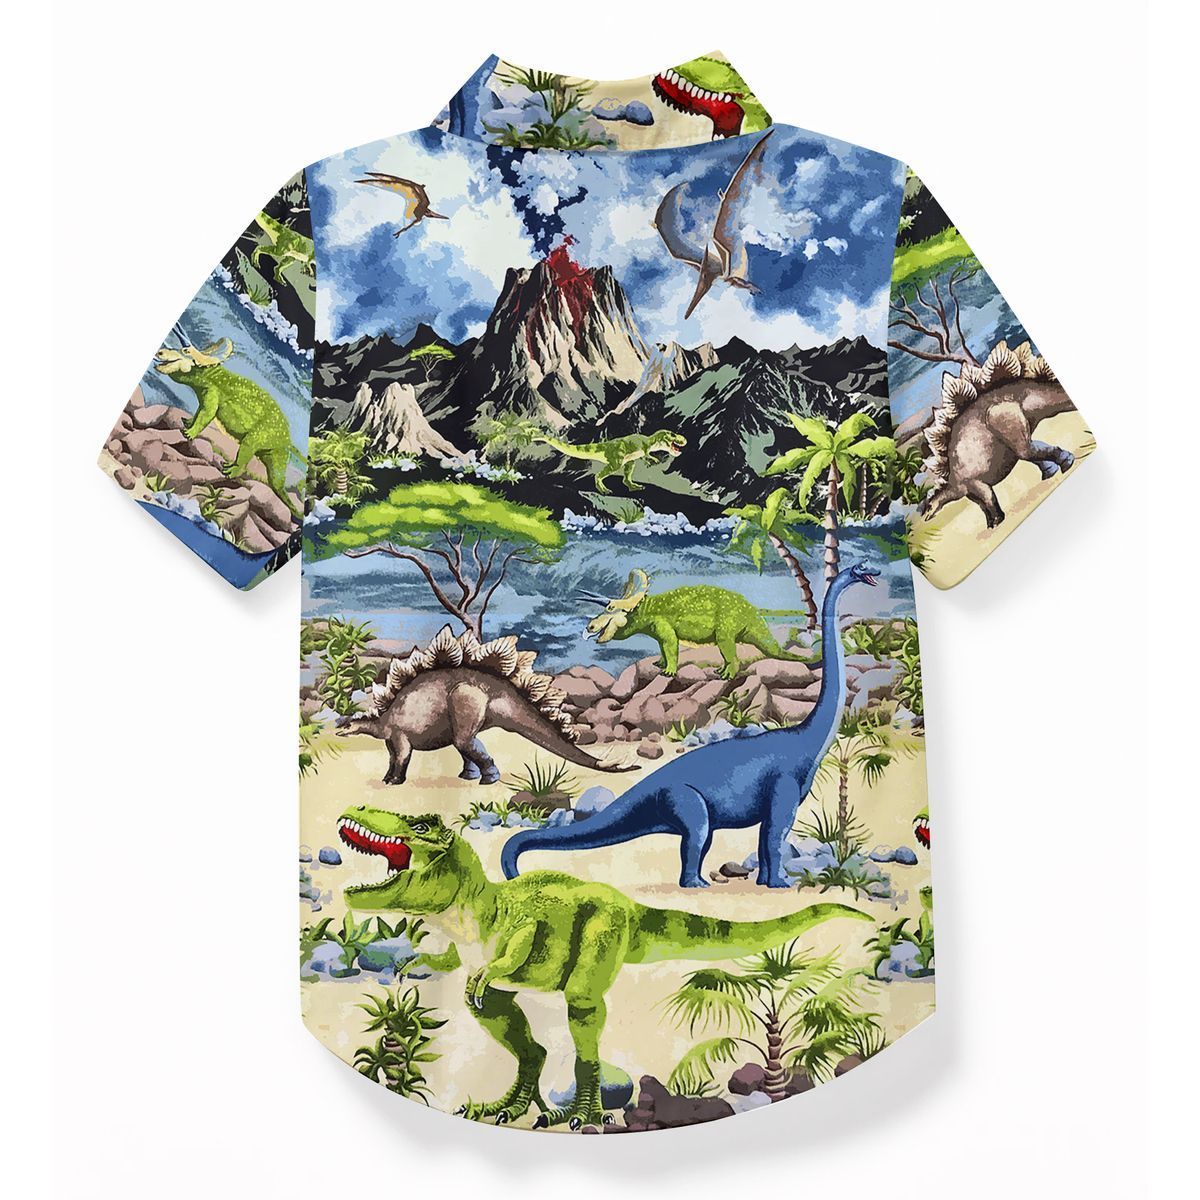 Gearhuman 3D Dinosaur Hawaii Shirt ZZ30062111 Short Sleeve Shirt 